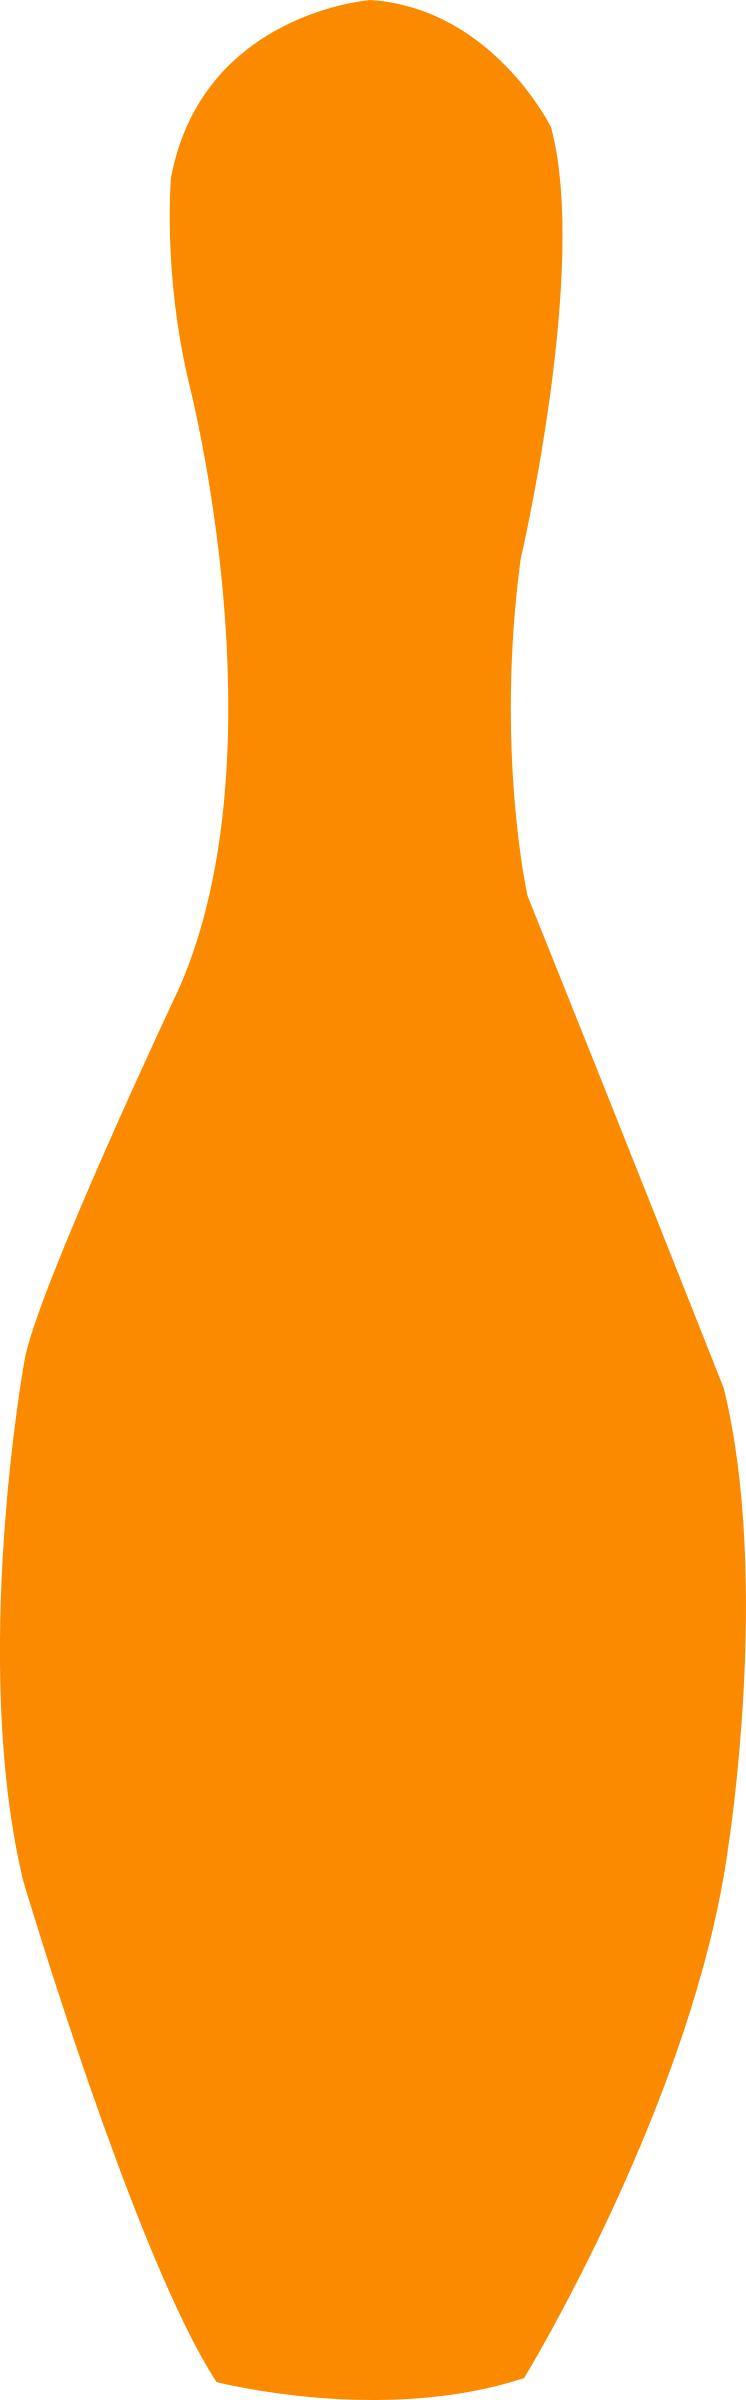 bowling pin orange png transparent